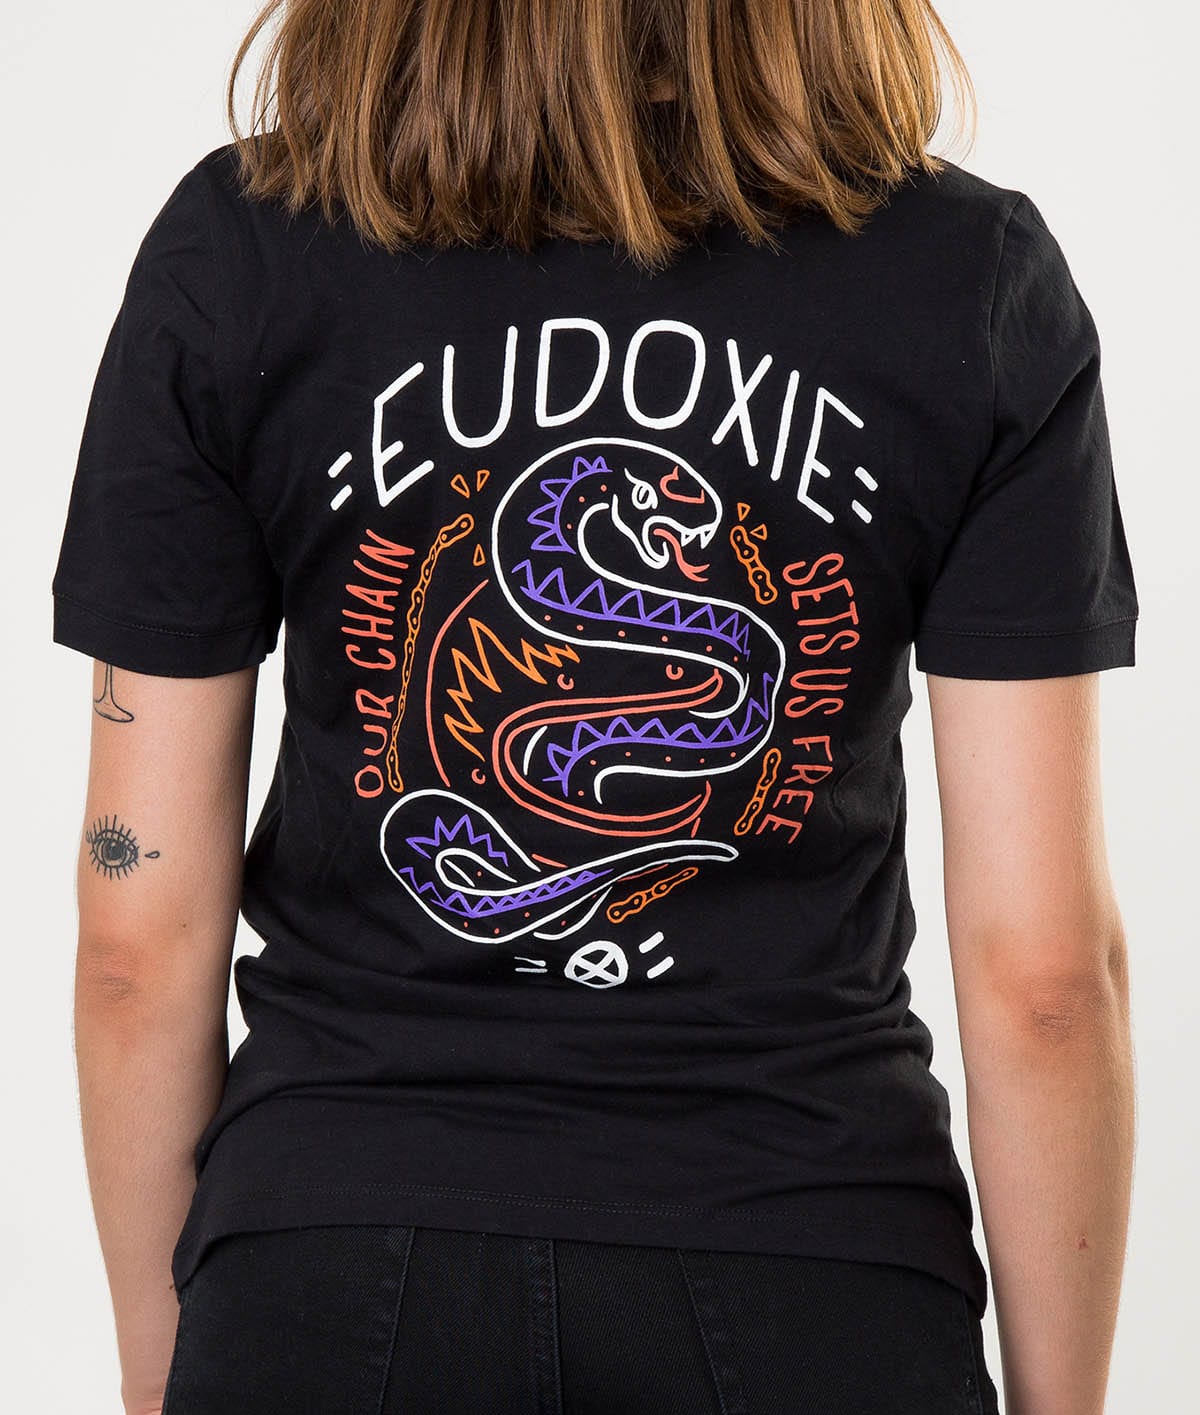 Eudoxie Black Masha T-Shirt - Medium - Bild 1